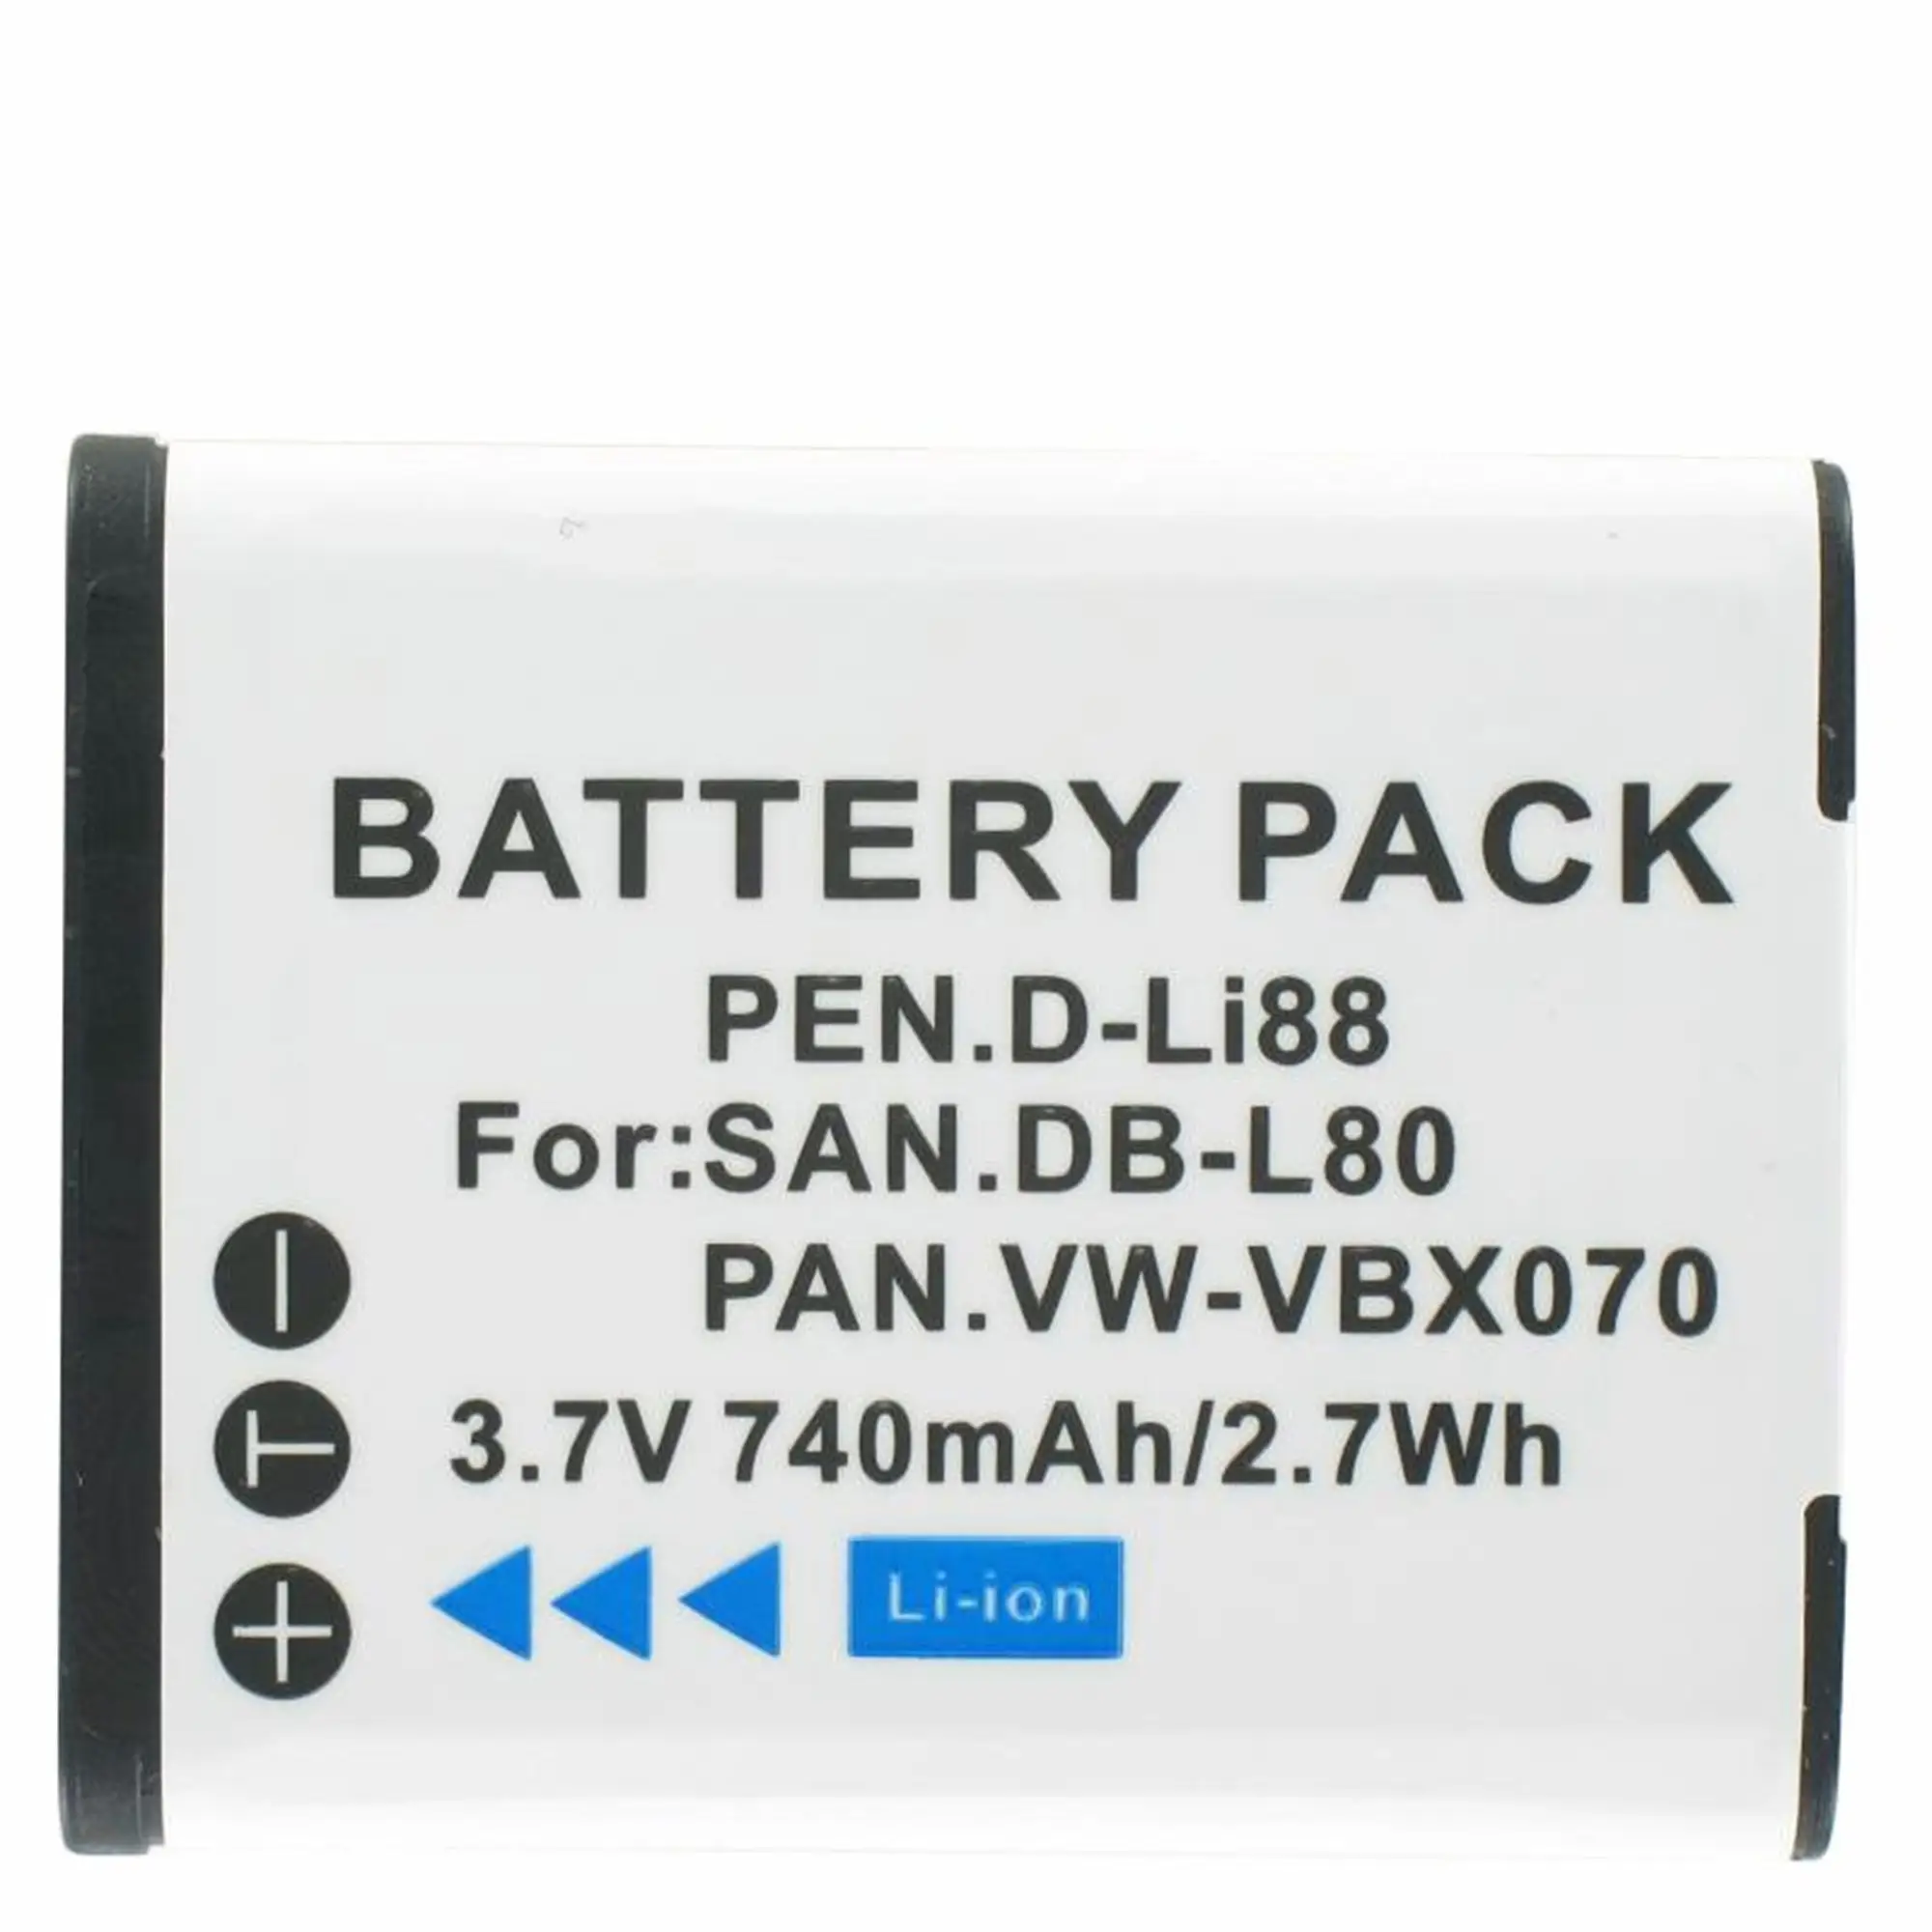 Bateria recarregável de íon de lítio para PAN VW-VBX070 e outros produtos de reposição